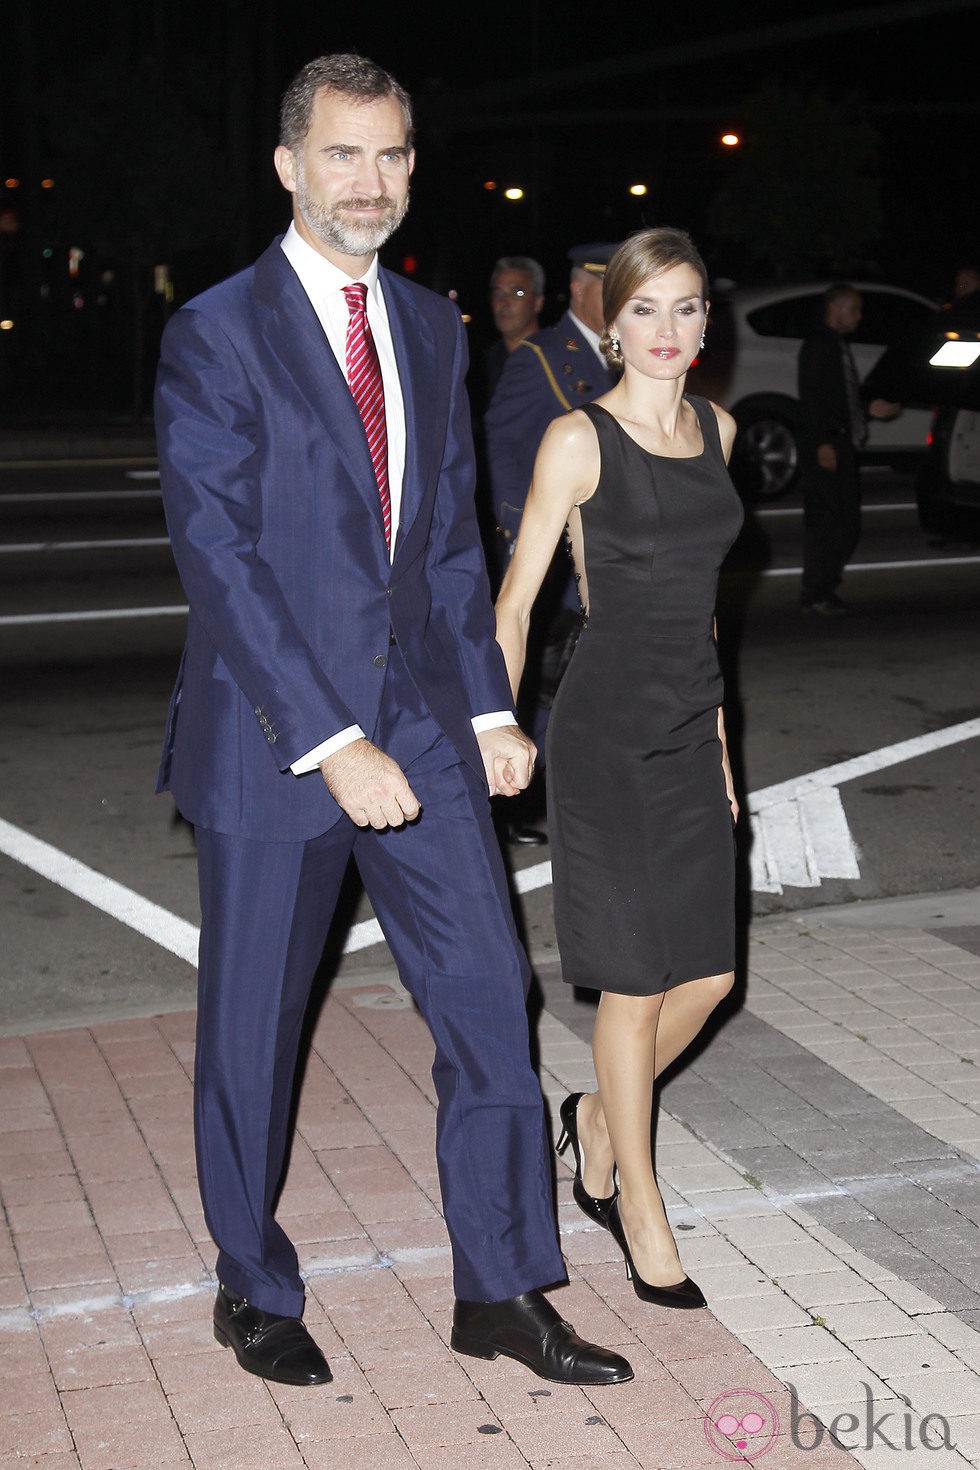 Los Príncipes Felipe y Letizia en la cena de la Fundación España-Florida en Miami